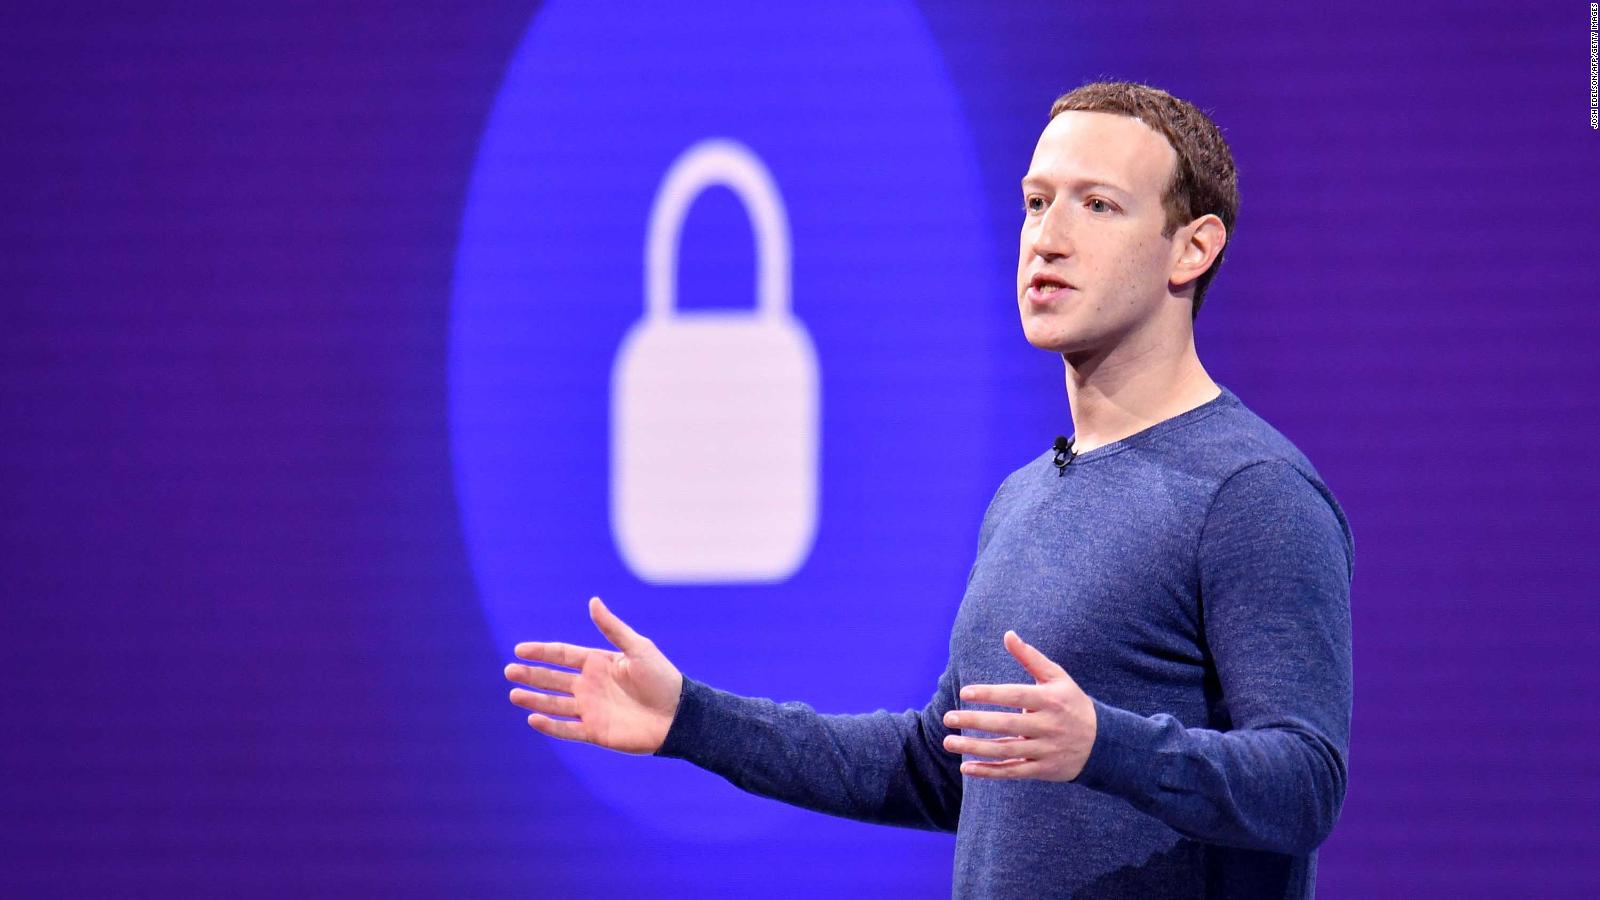 Advierten sobre el uso de la criptomoneda de Facebook